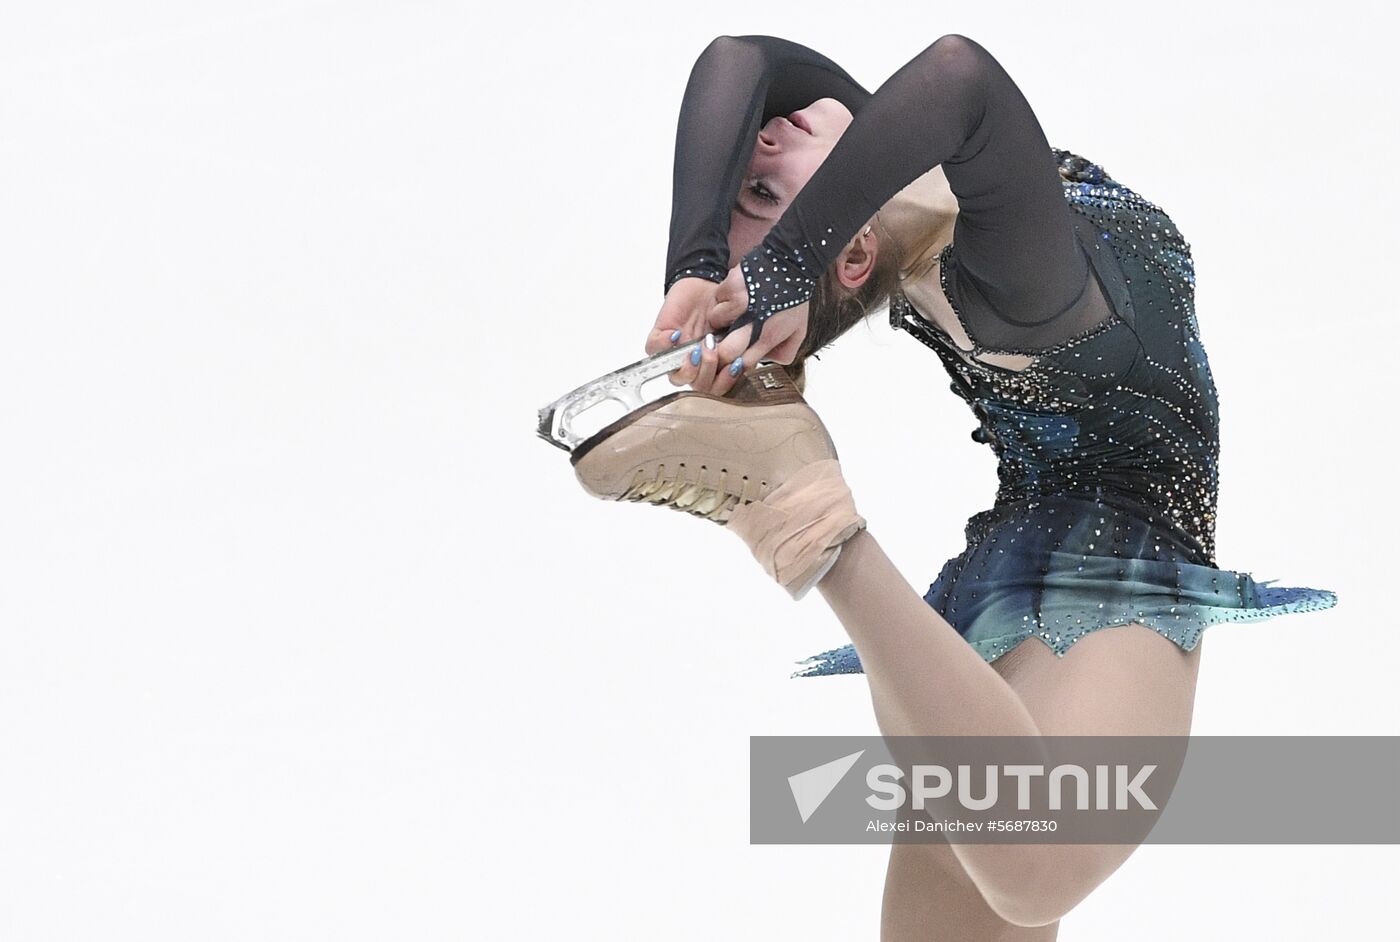 Finland Figure Skating Ladies